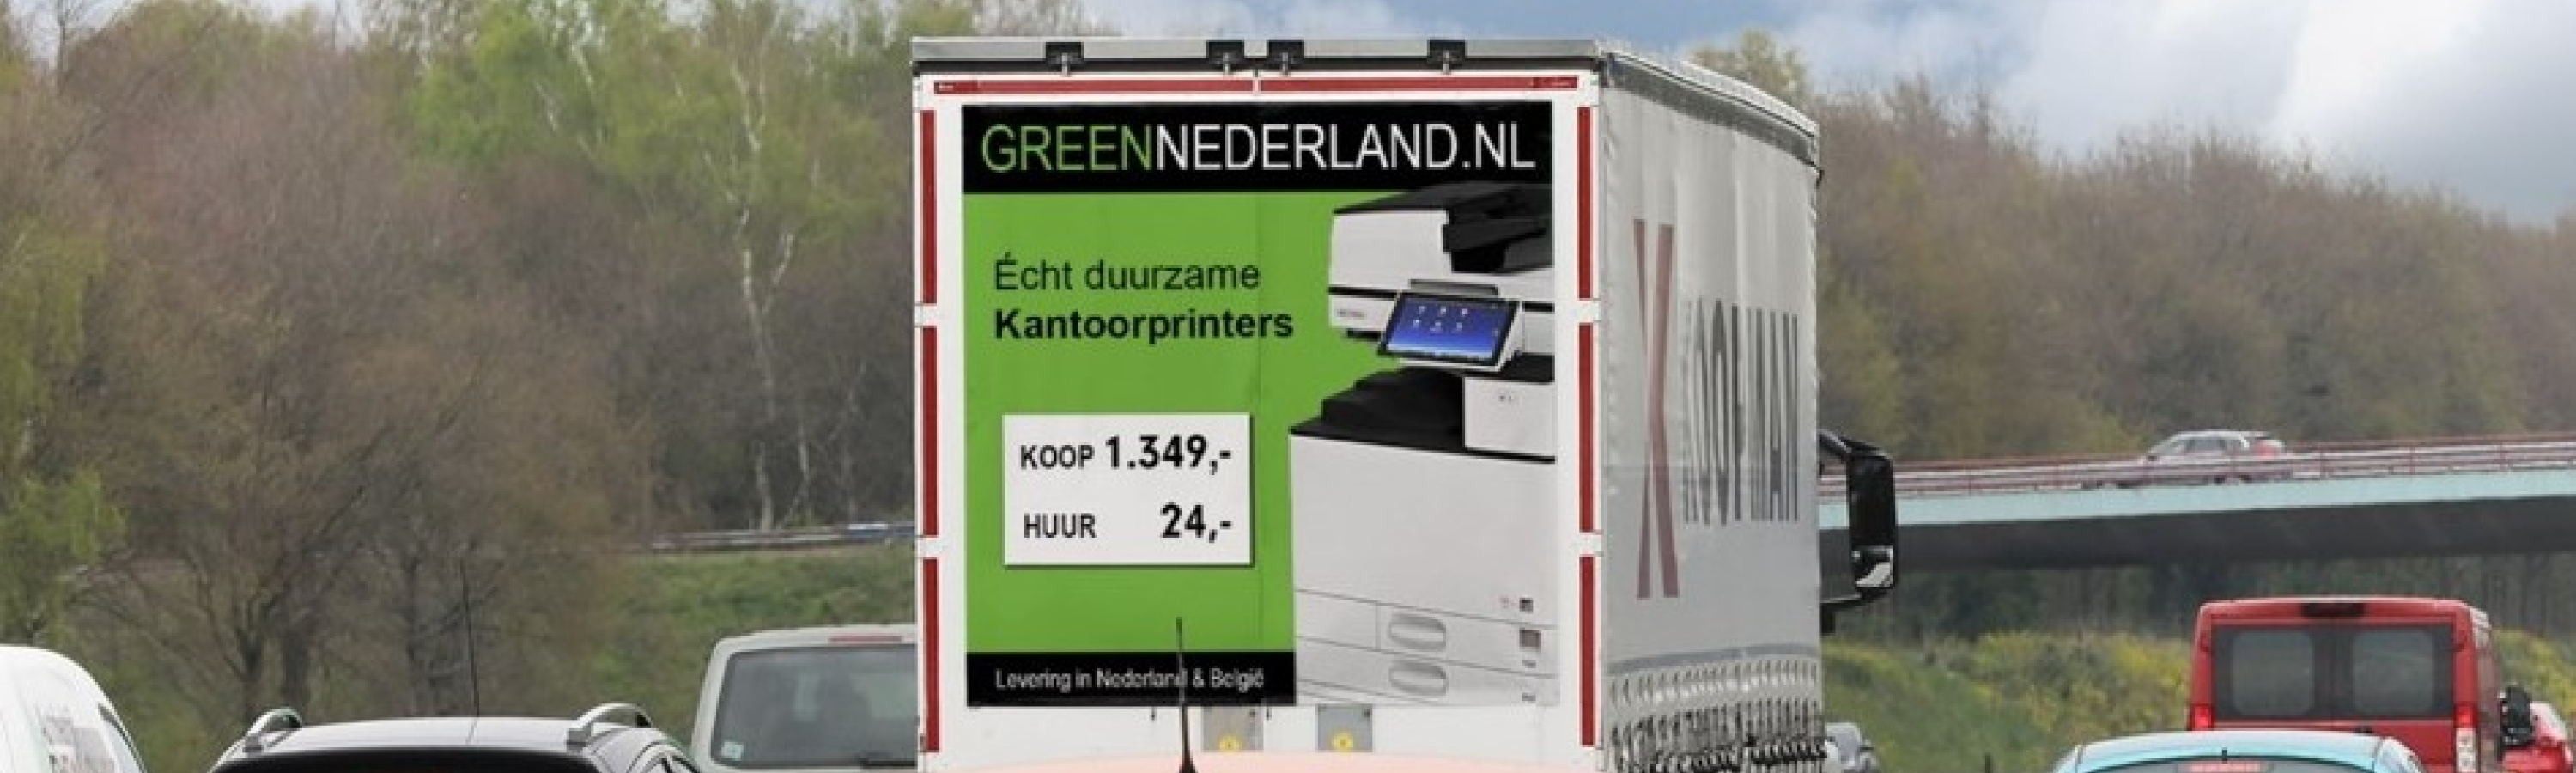 Green Nederland op de weg